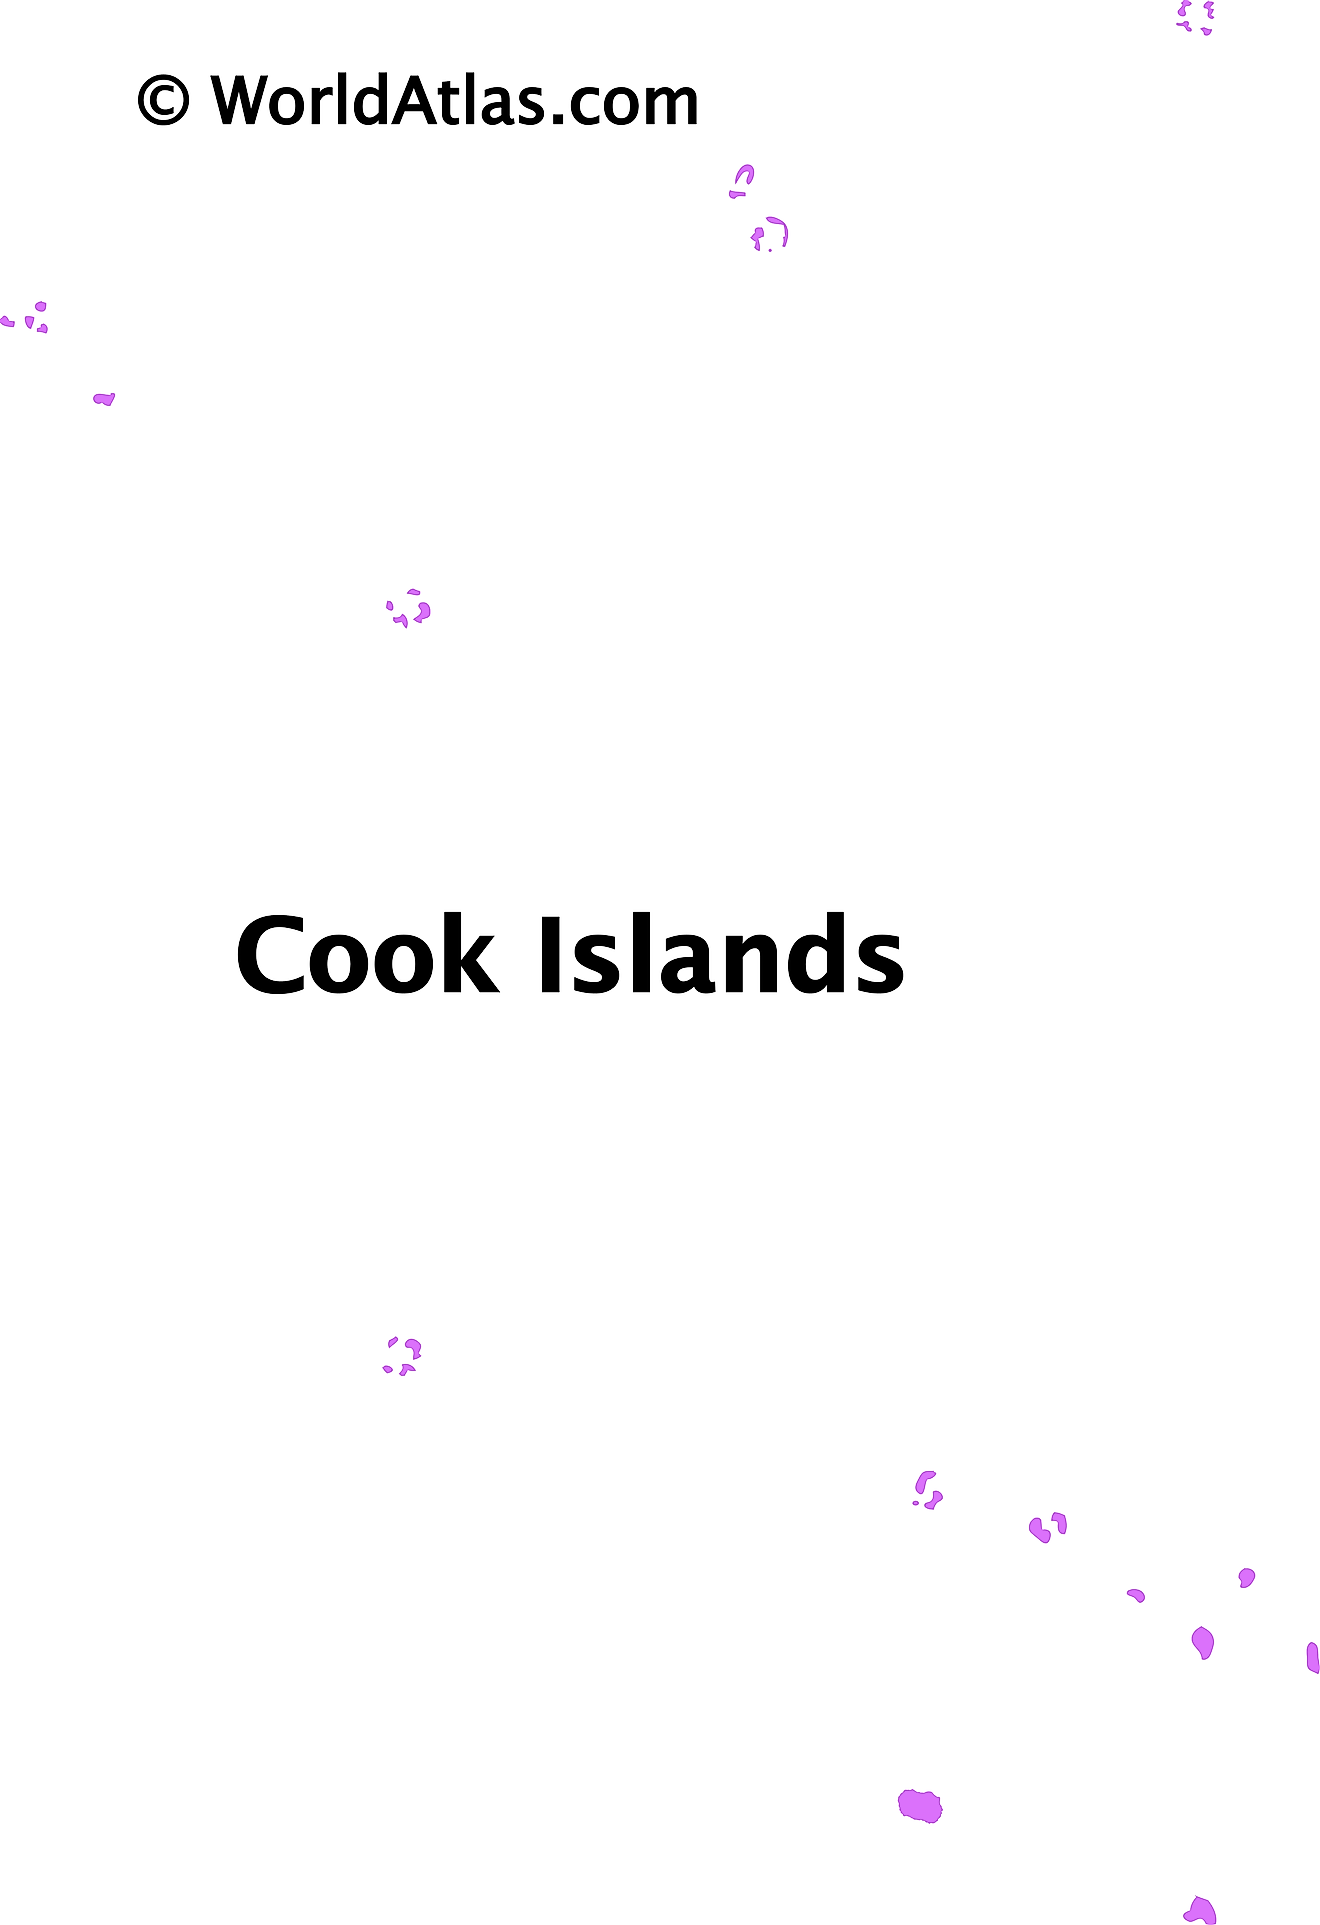 Mapa de contorno de las Islas Cook